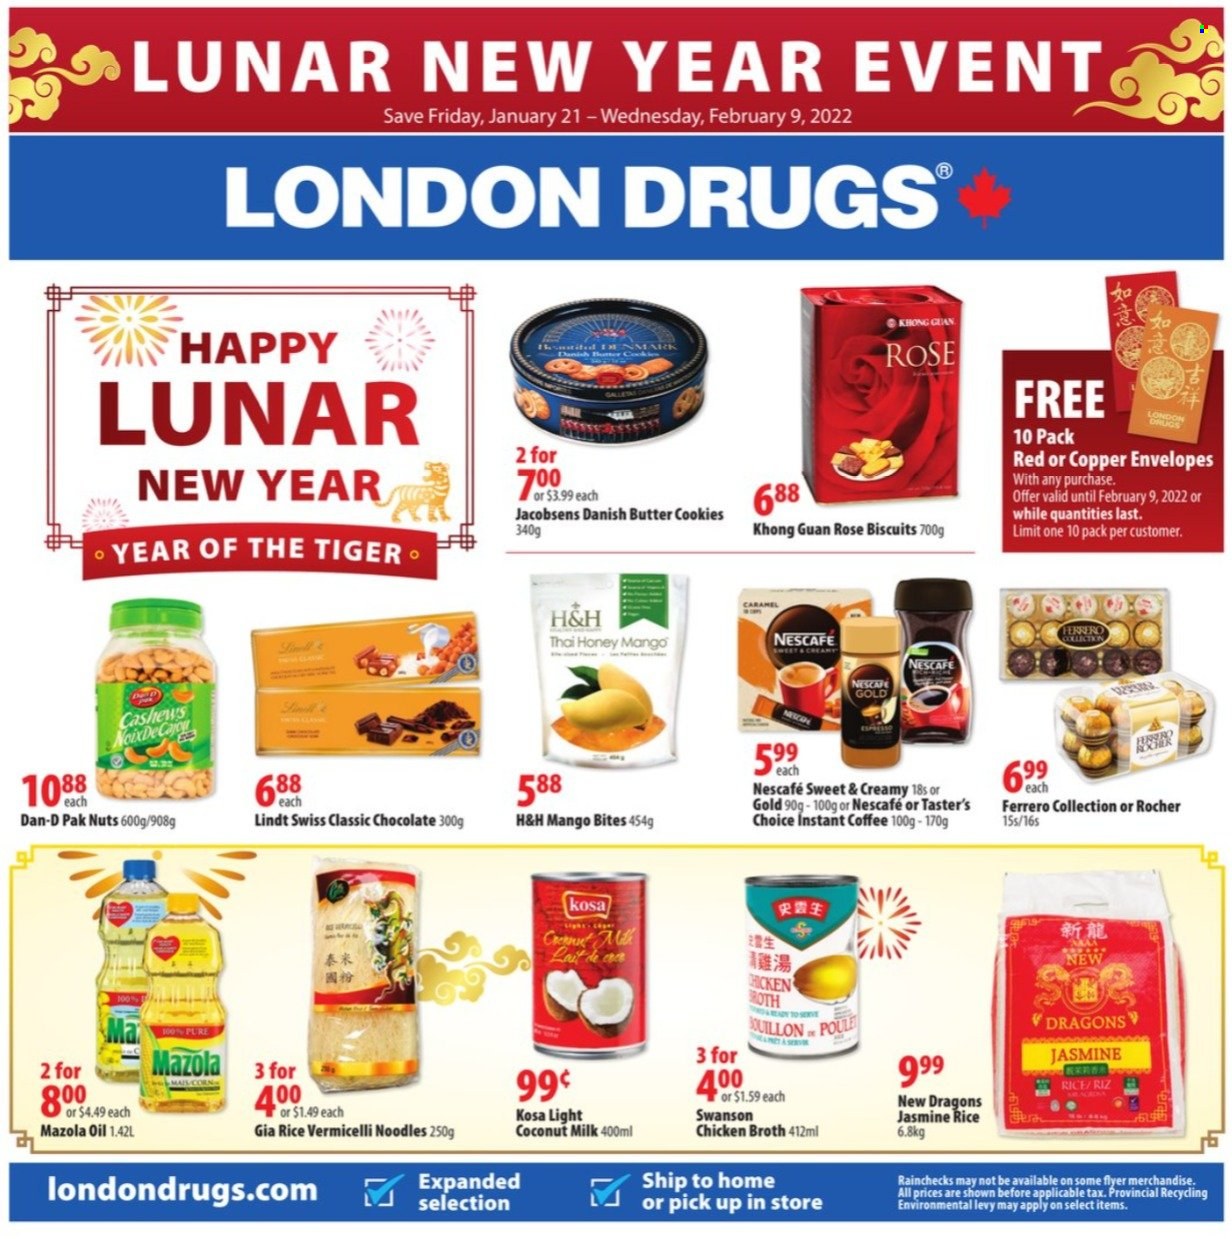 thumbnail - Circulaire London Drugs - 21 Janvier 2022 - 09 Février 2022 - Produits soldés - biscuits, cookies, riz, Nescafé, Lindt. Page 1.